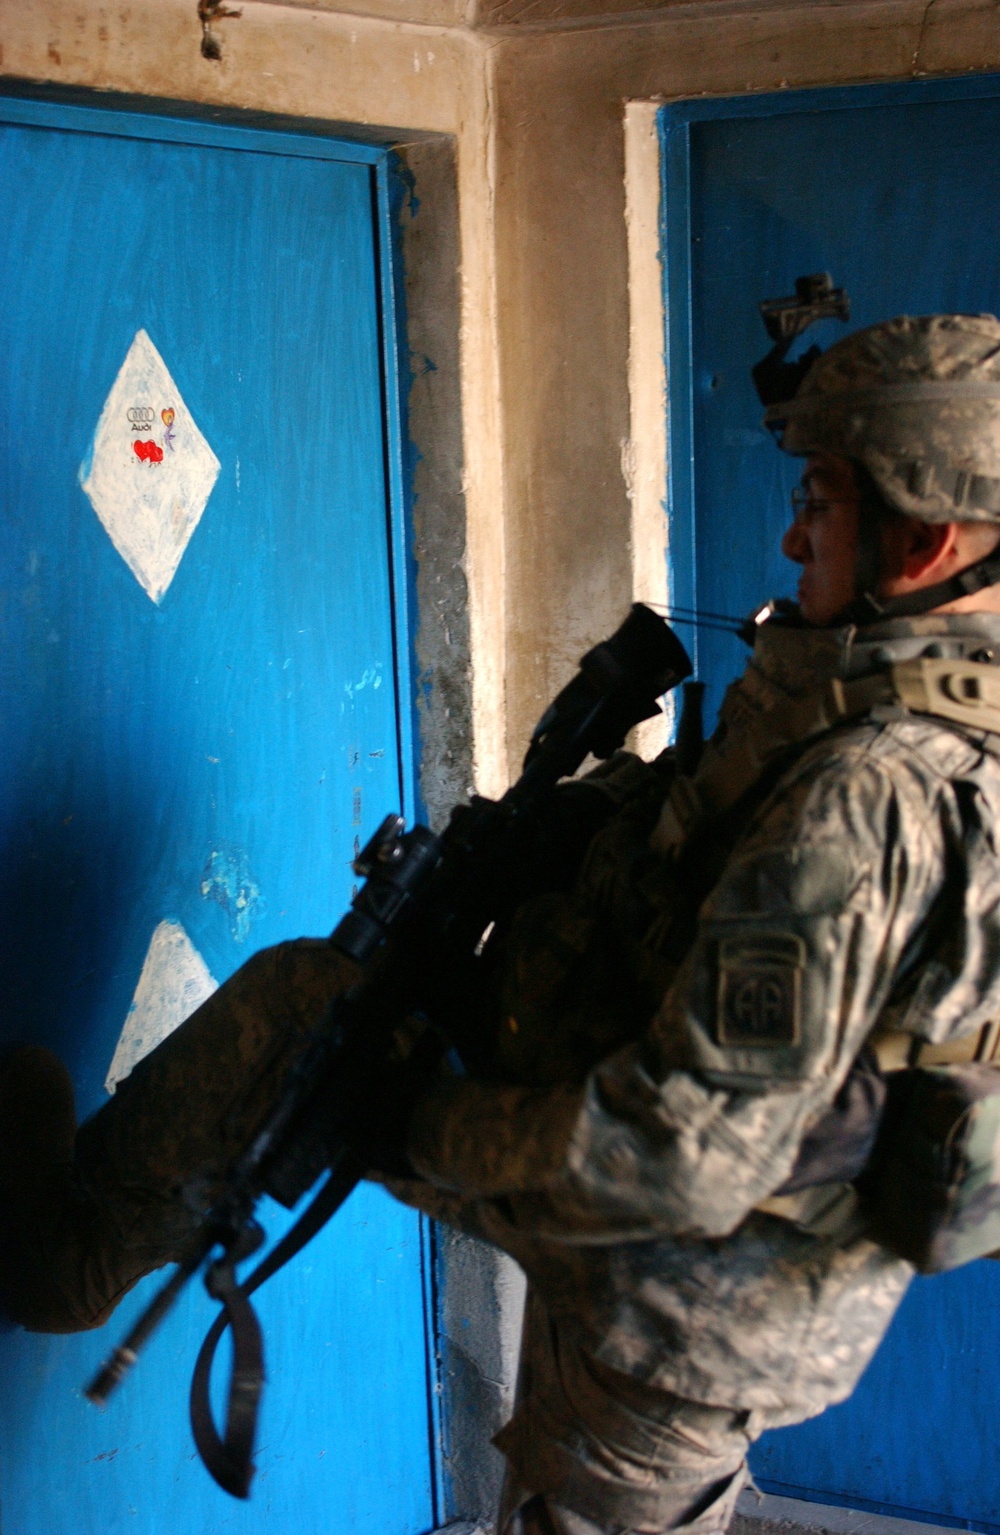 Sgt. Gabriel Joshua Herrera kicks in a door